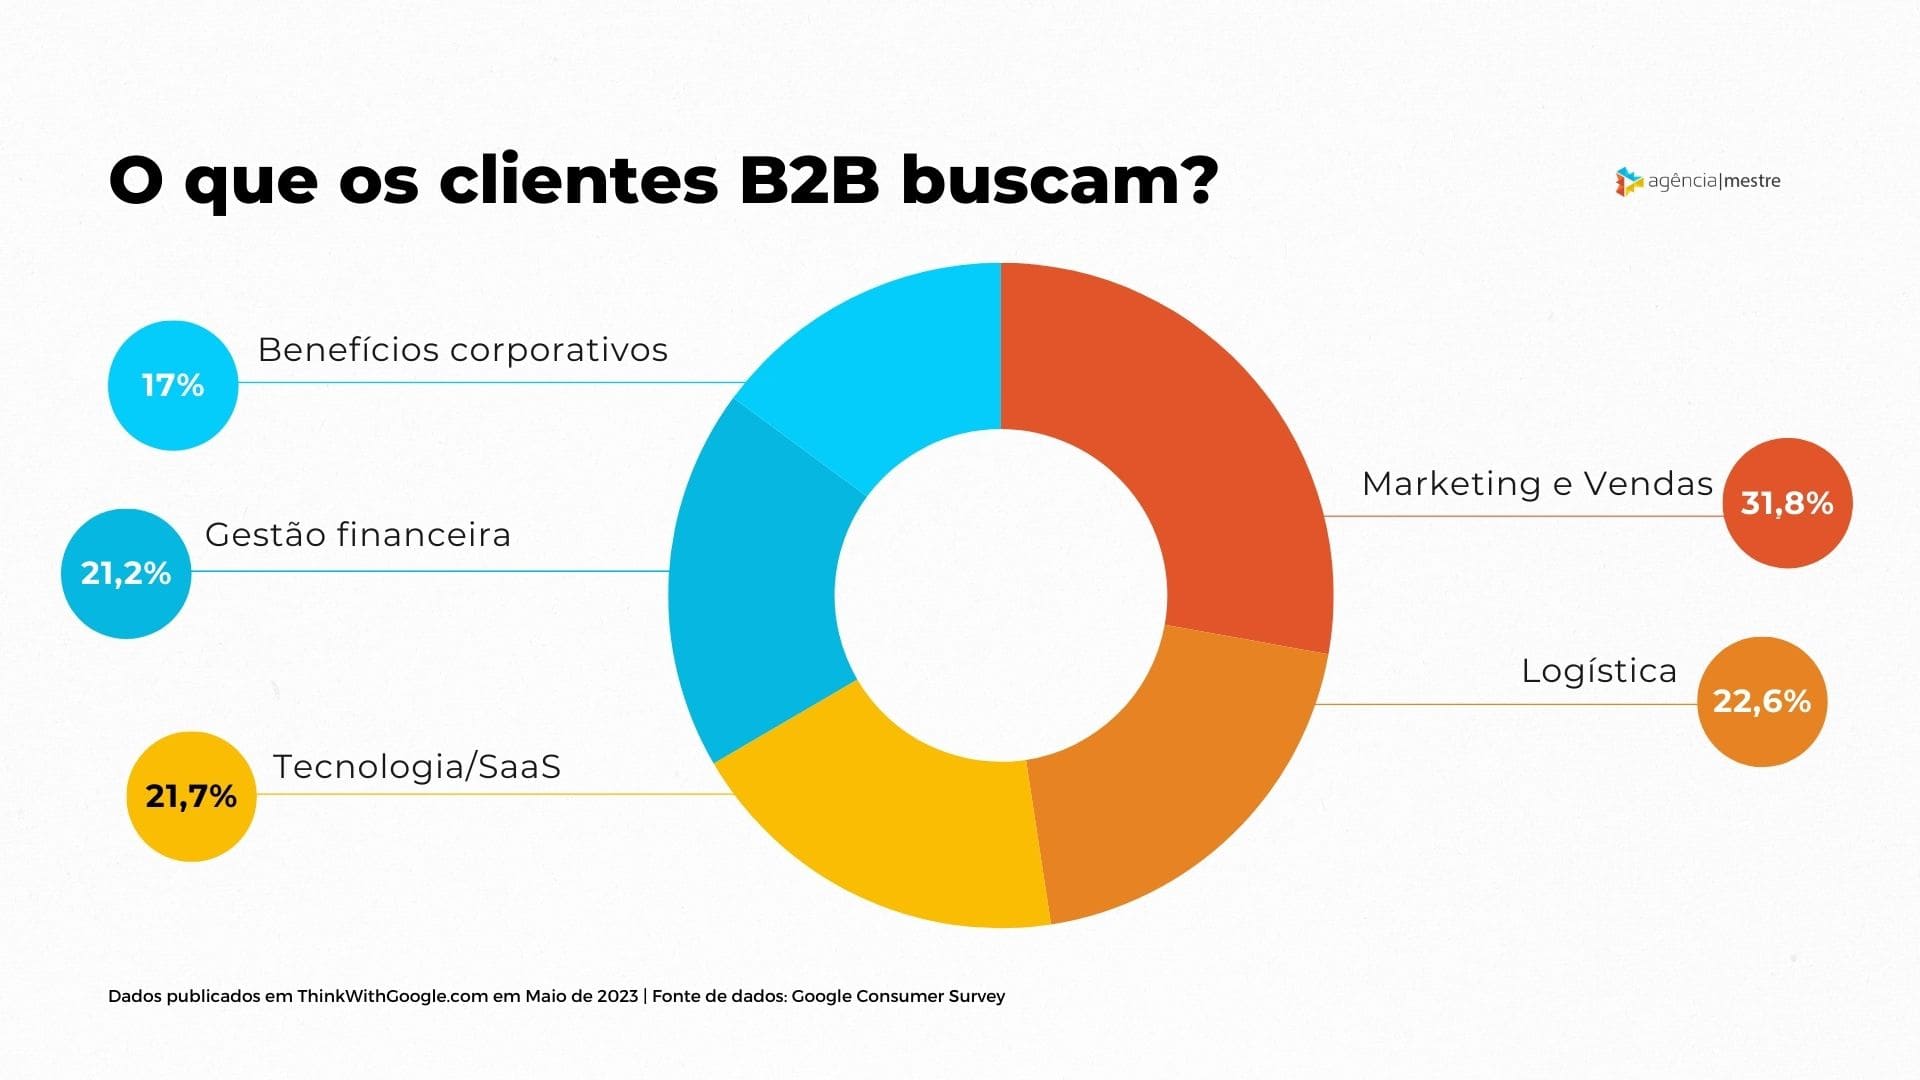 O que os clientes B2B buscam?